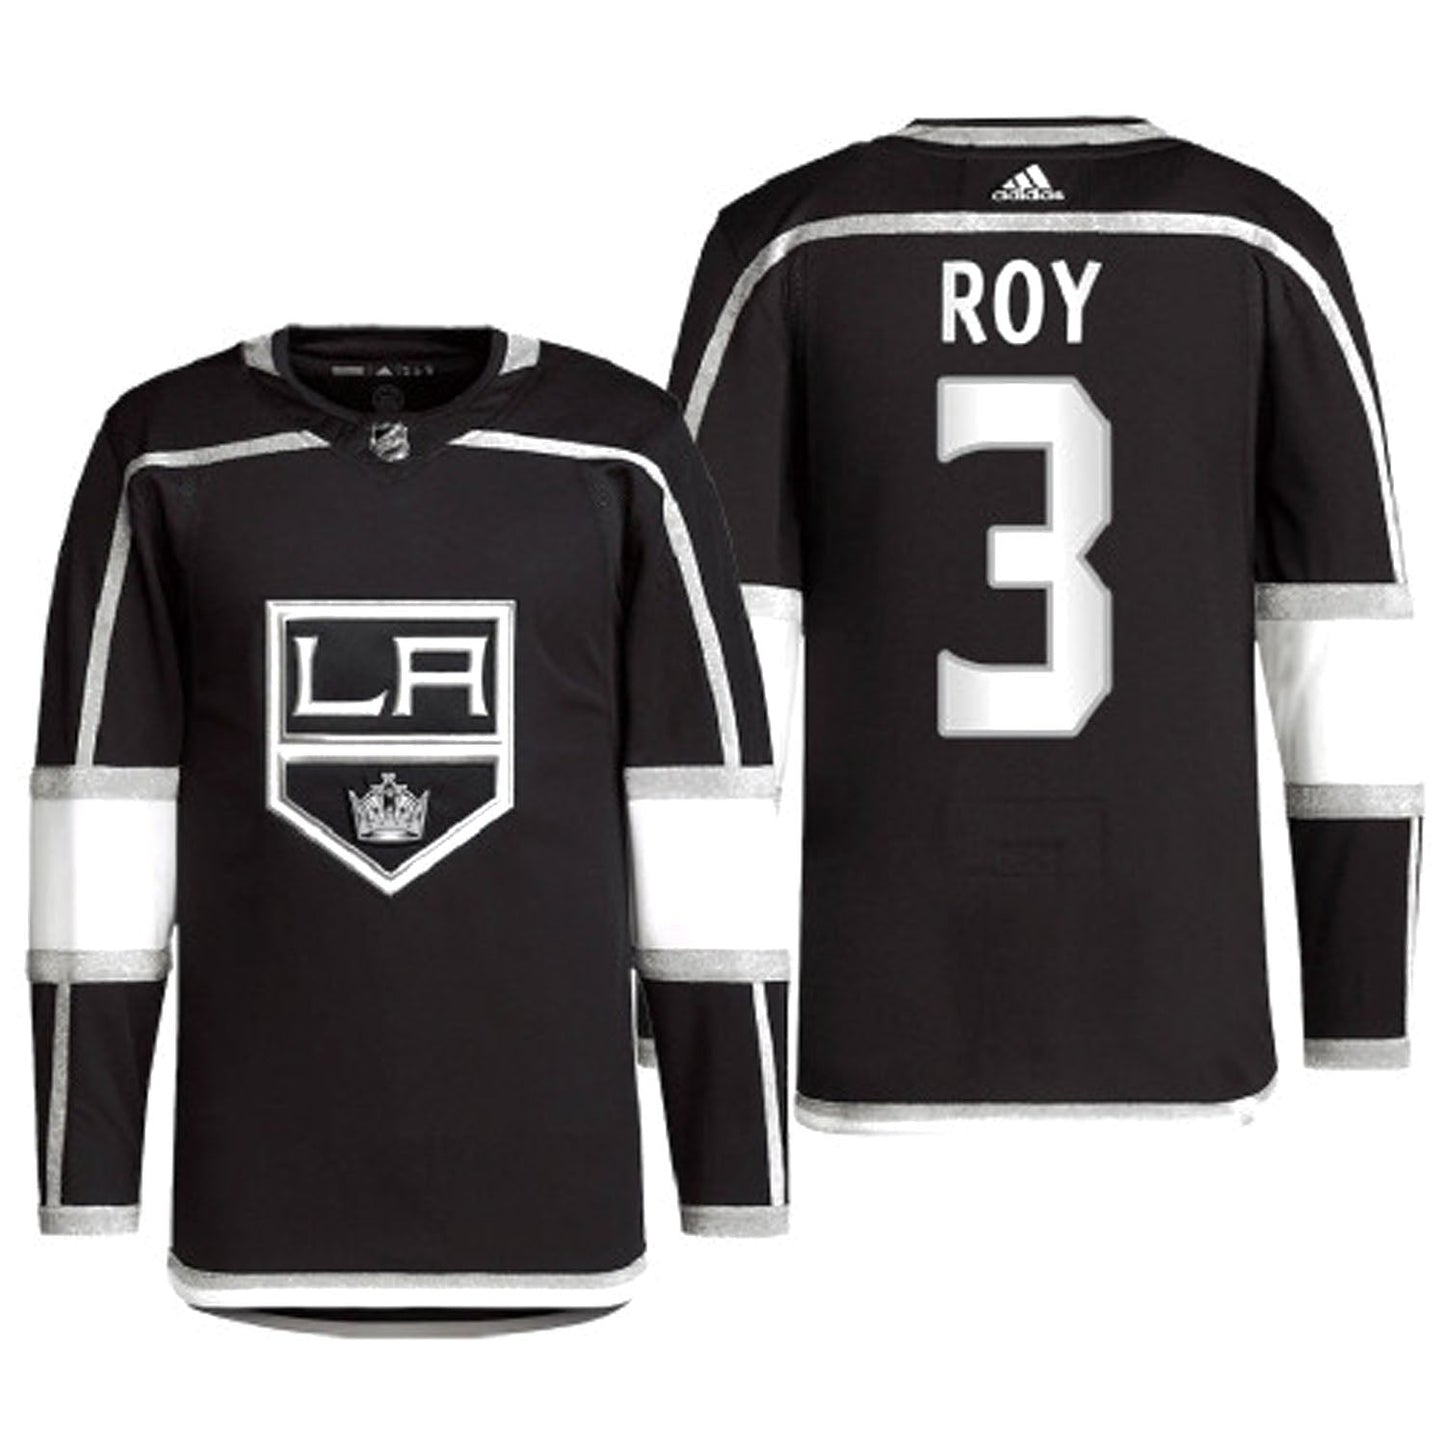 NHL Matt Roy La Kings 3 Jersey